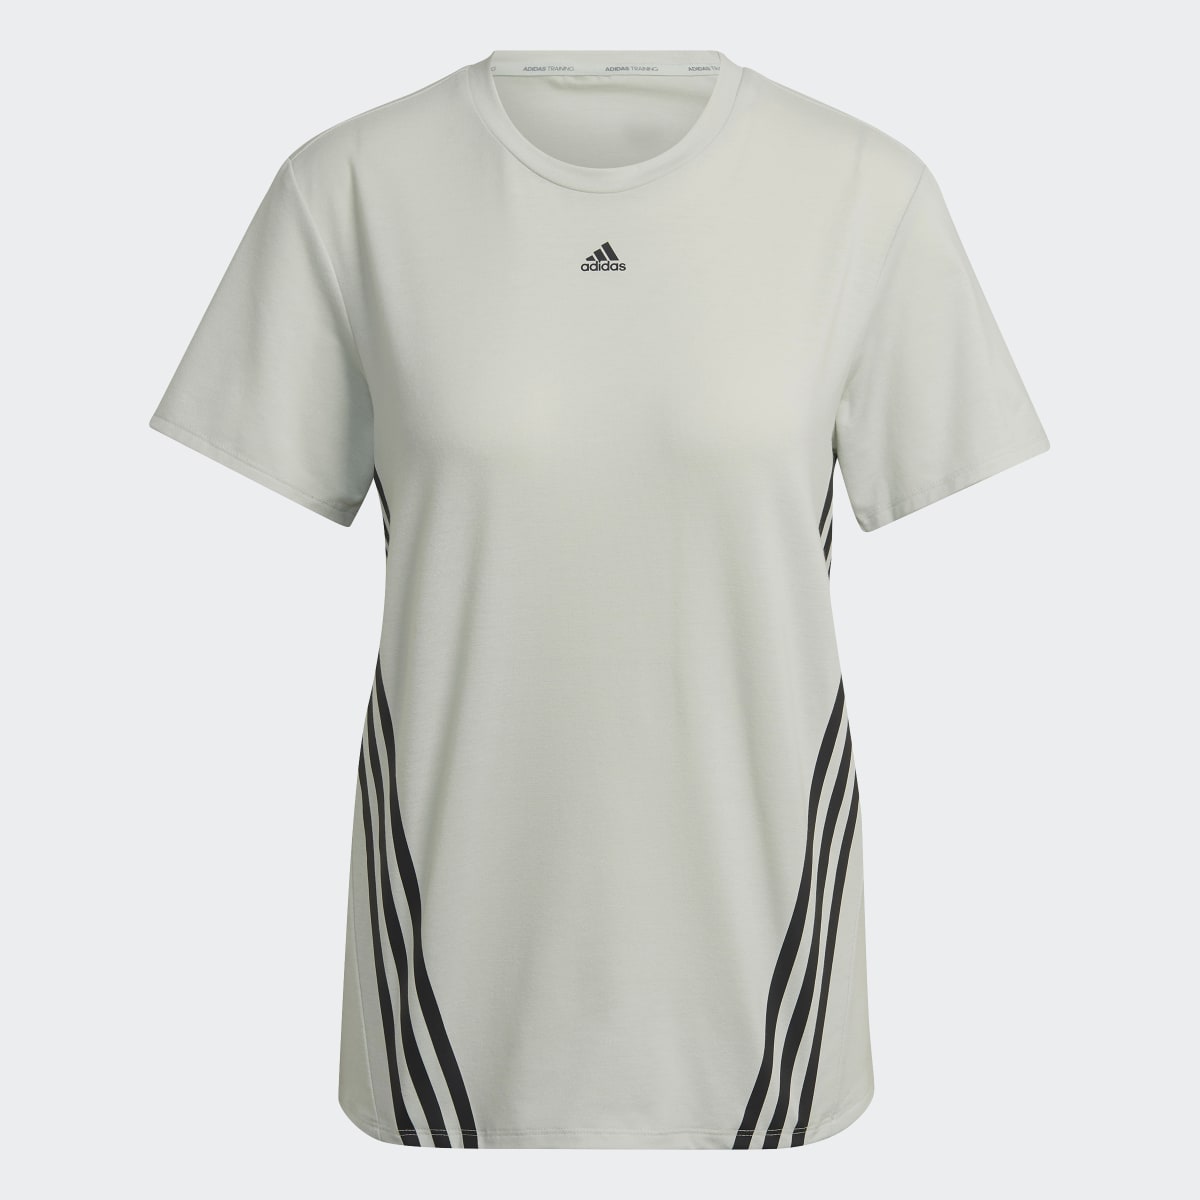 Adidas Train Icons 3-Stripes T-Shirt. 5